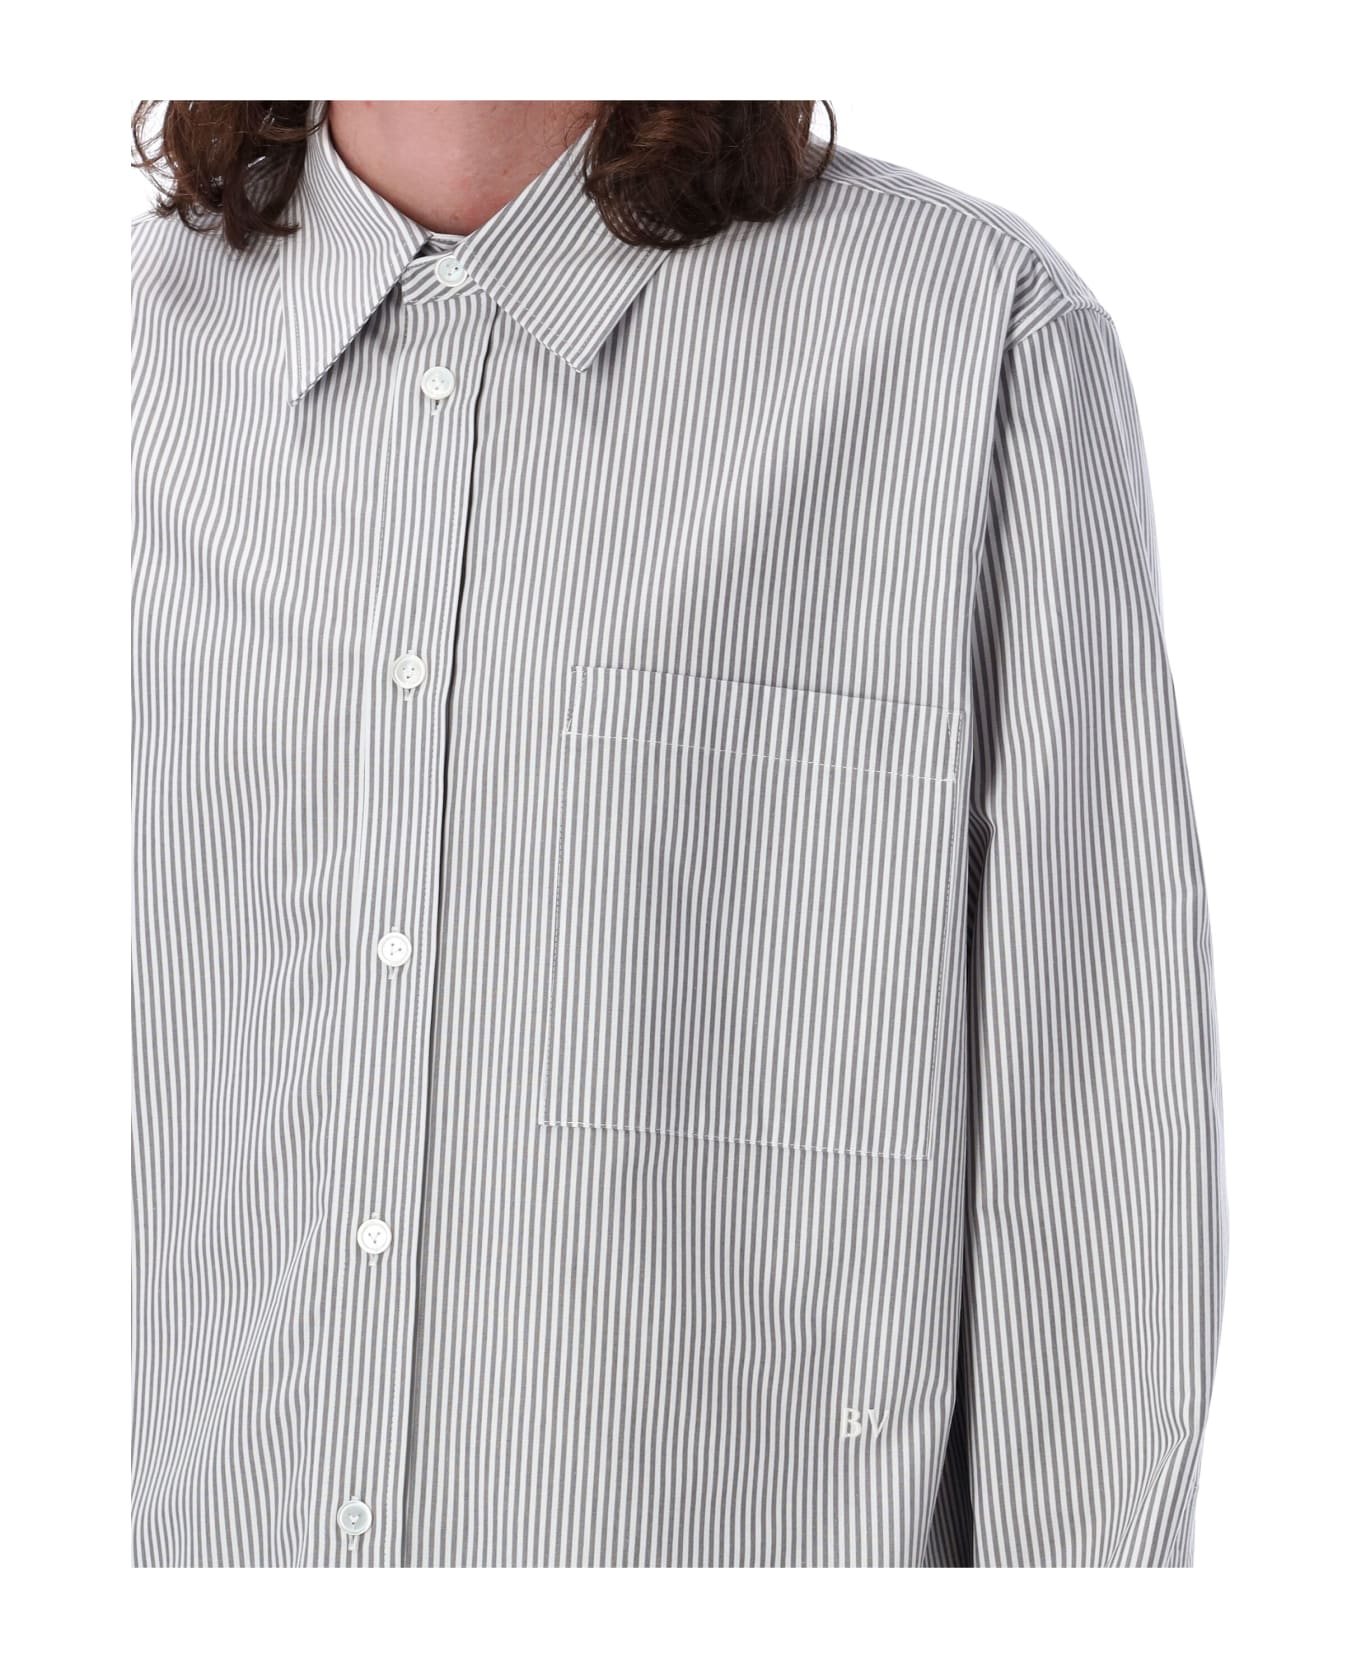 Bottega Veneta Shirt Stripes - GREY WHITE STRIPES